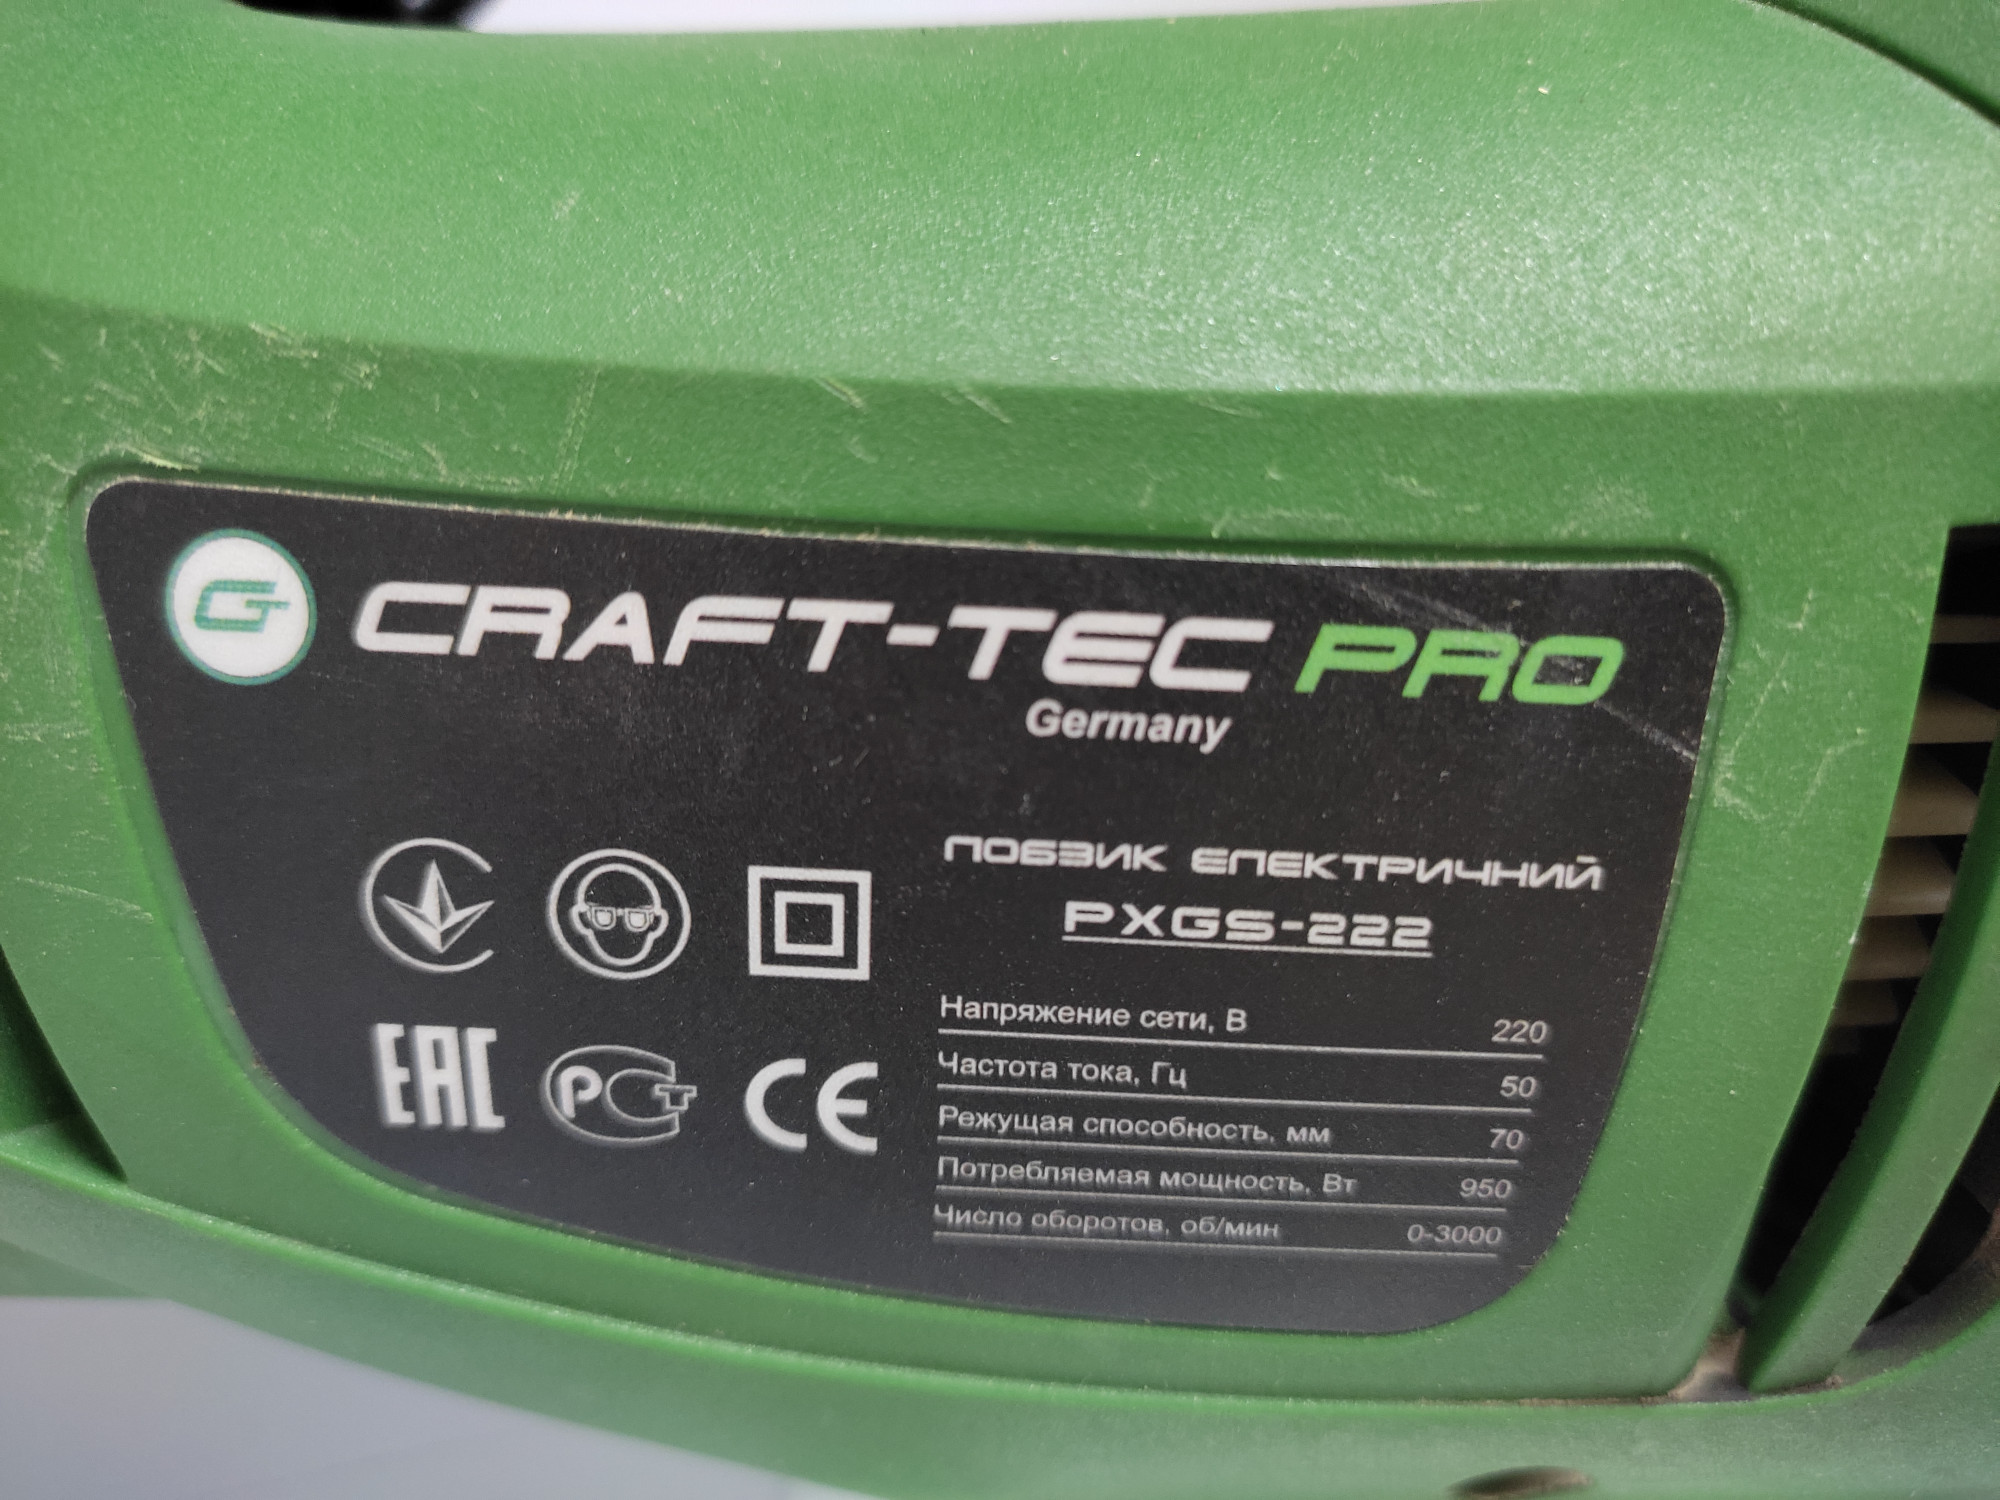 Электролобзик Craft-tec PXGS-222 3